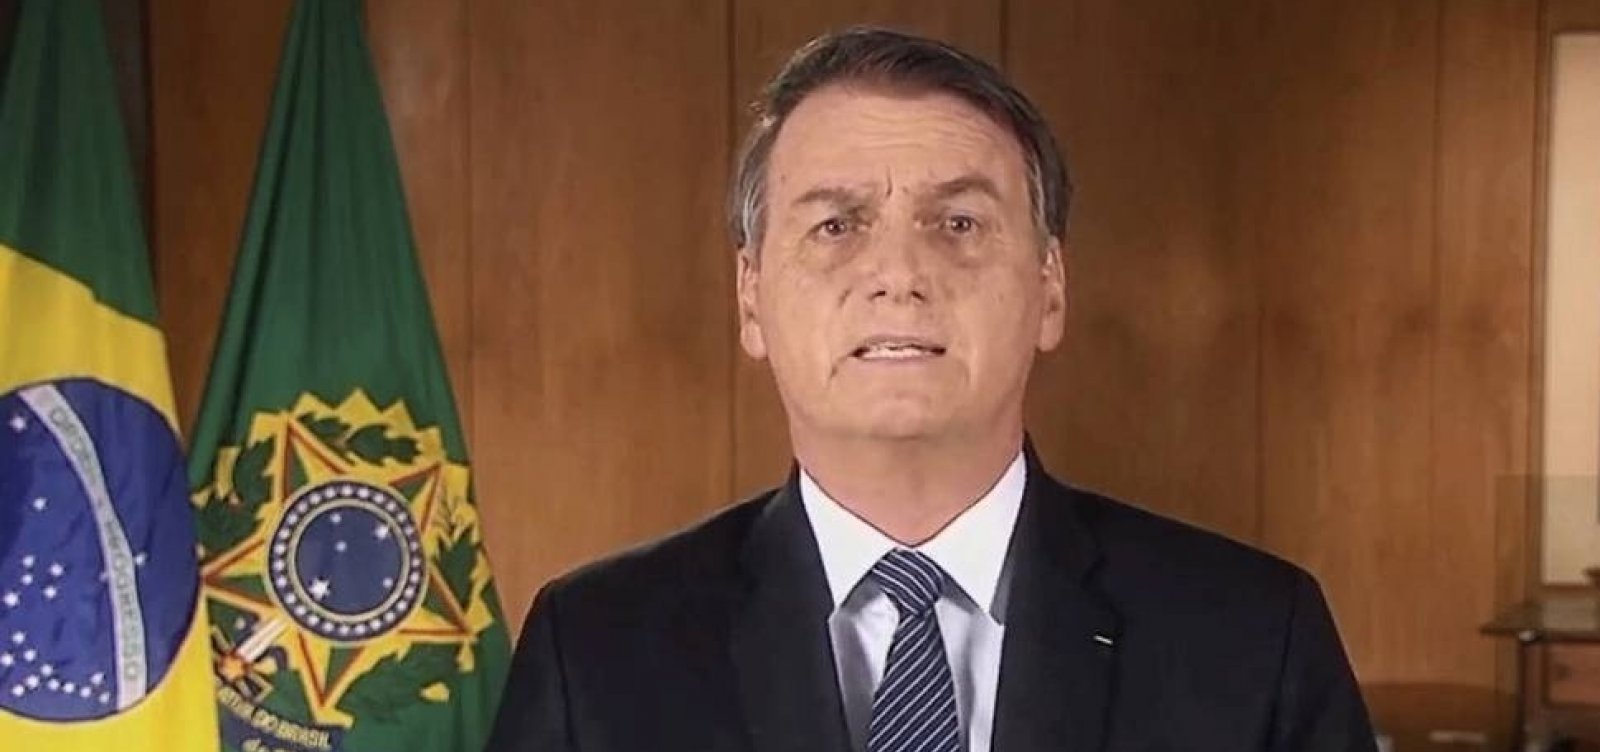 Bolsonaro estuda fazer pronunciamento em rede nacional de TV sobre Amazônia, diz coluna